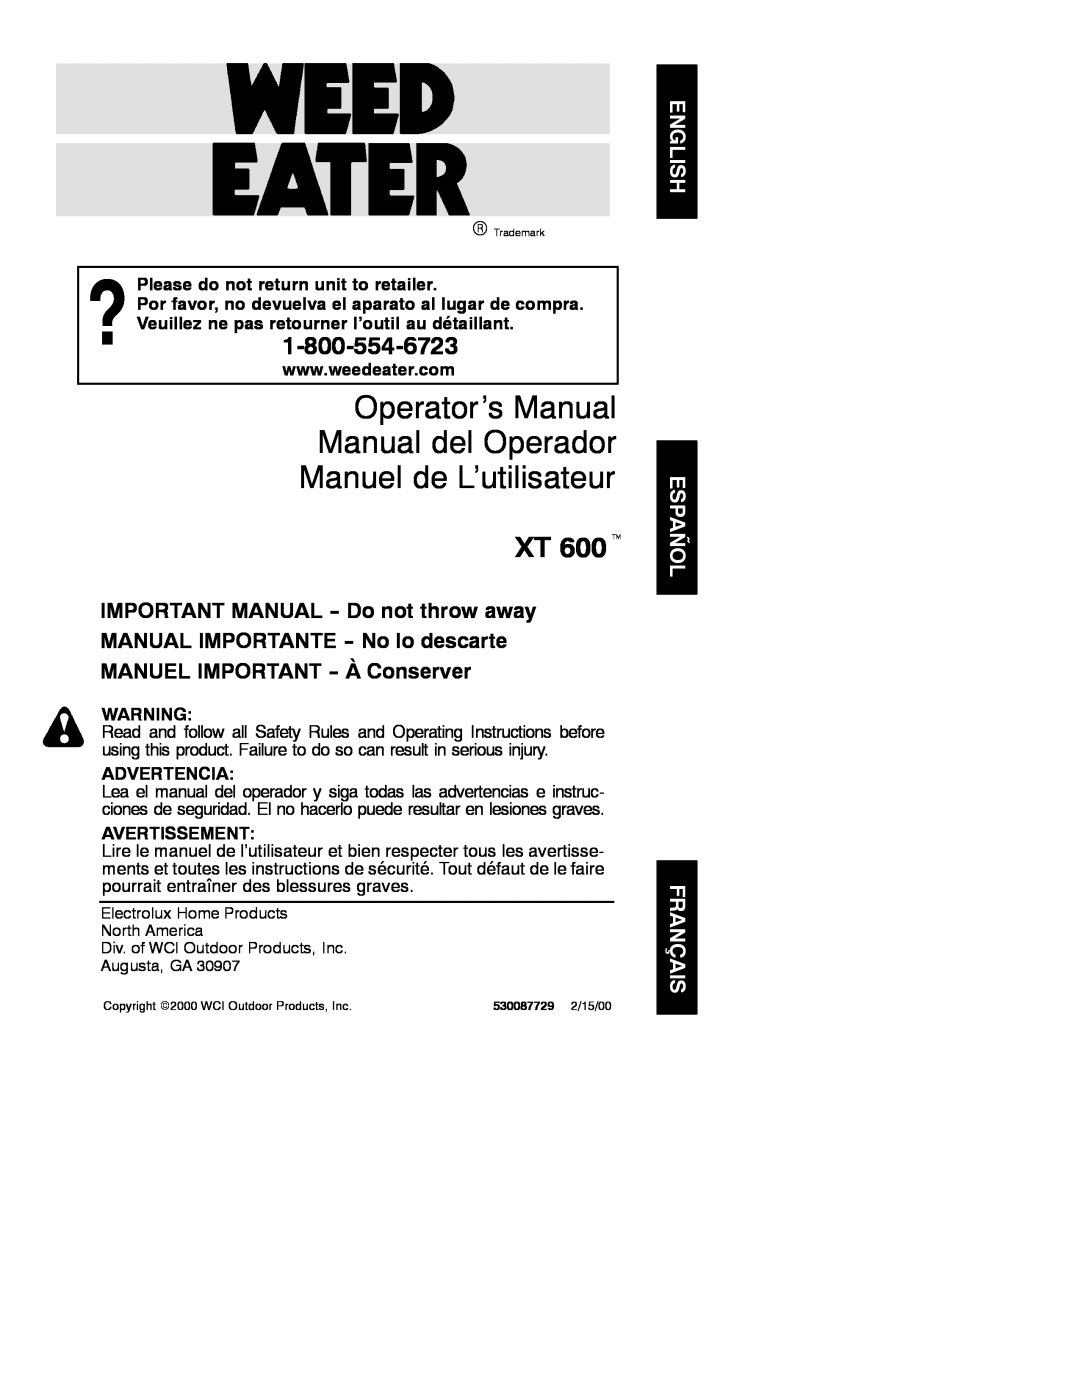 Weed Eater 530087729 manual Operator’s Manual Manual del Operador Manuel de L’utilisateur, XT 600t, Advertencia 